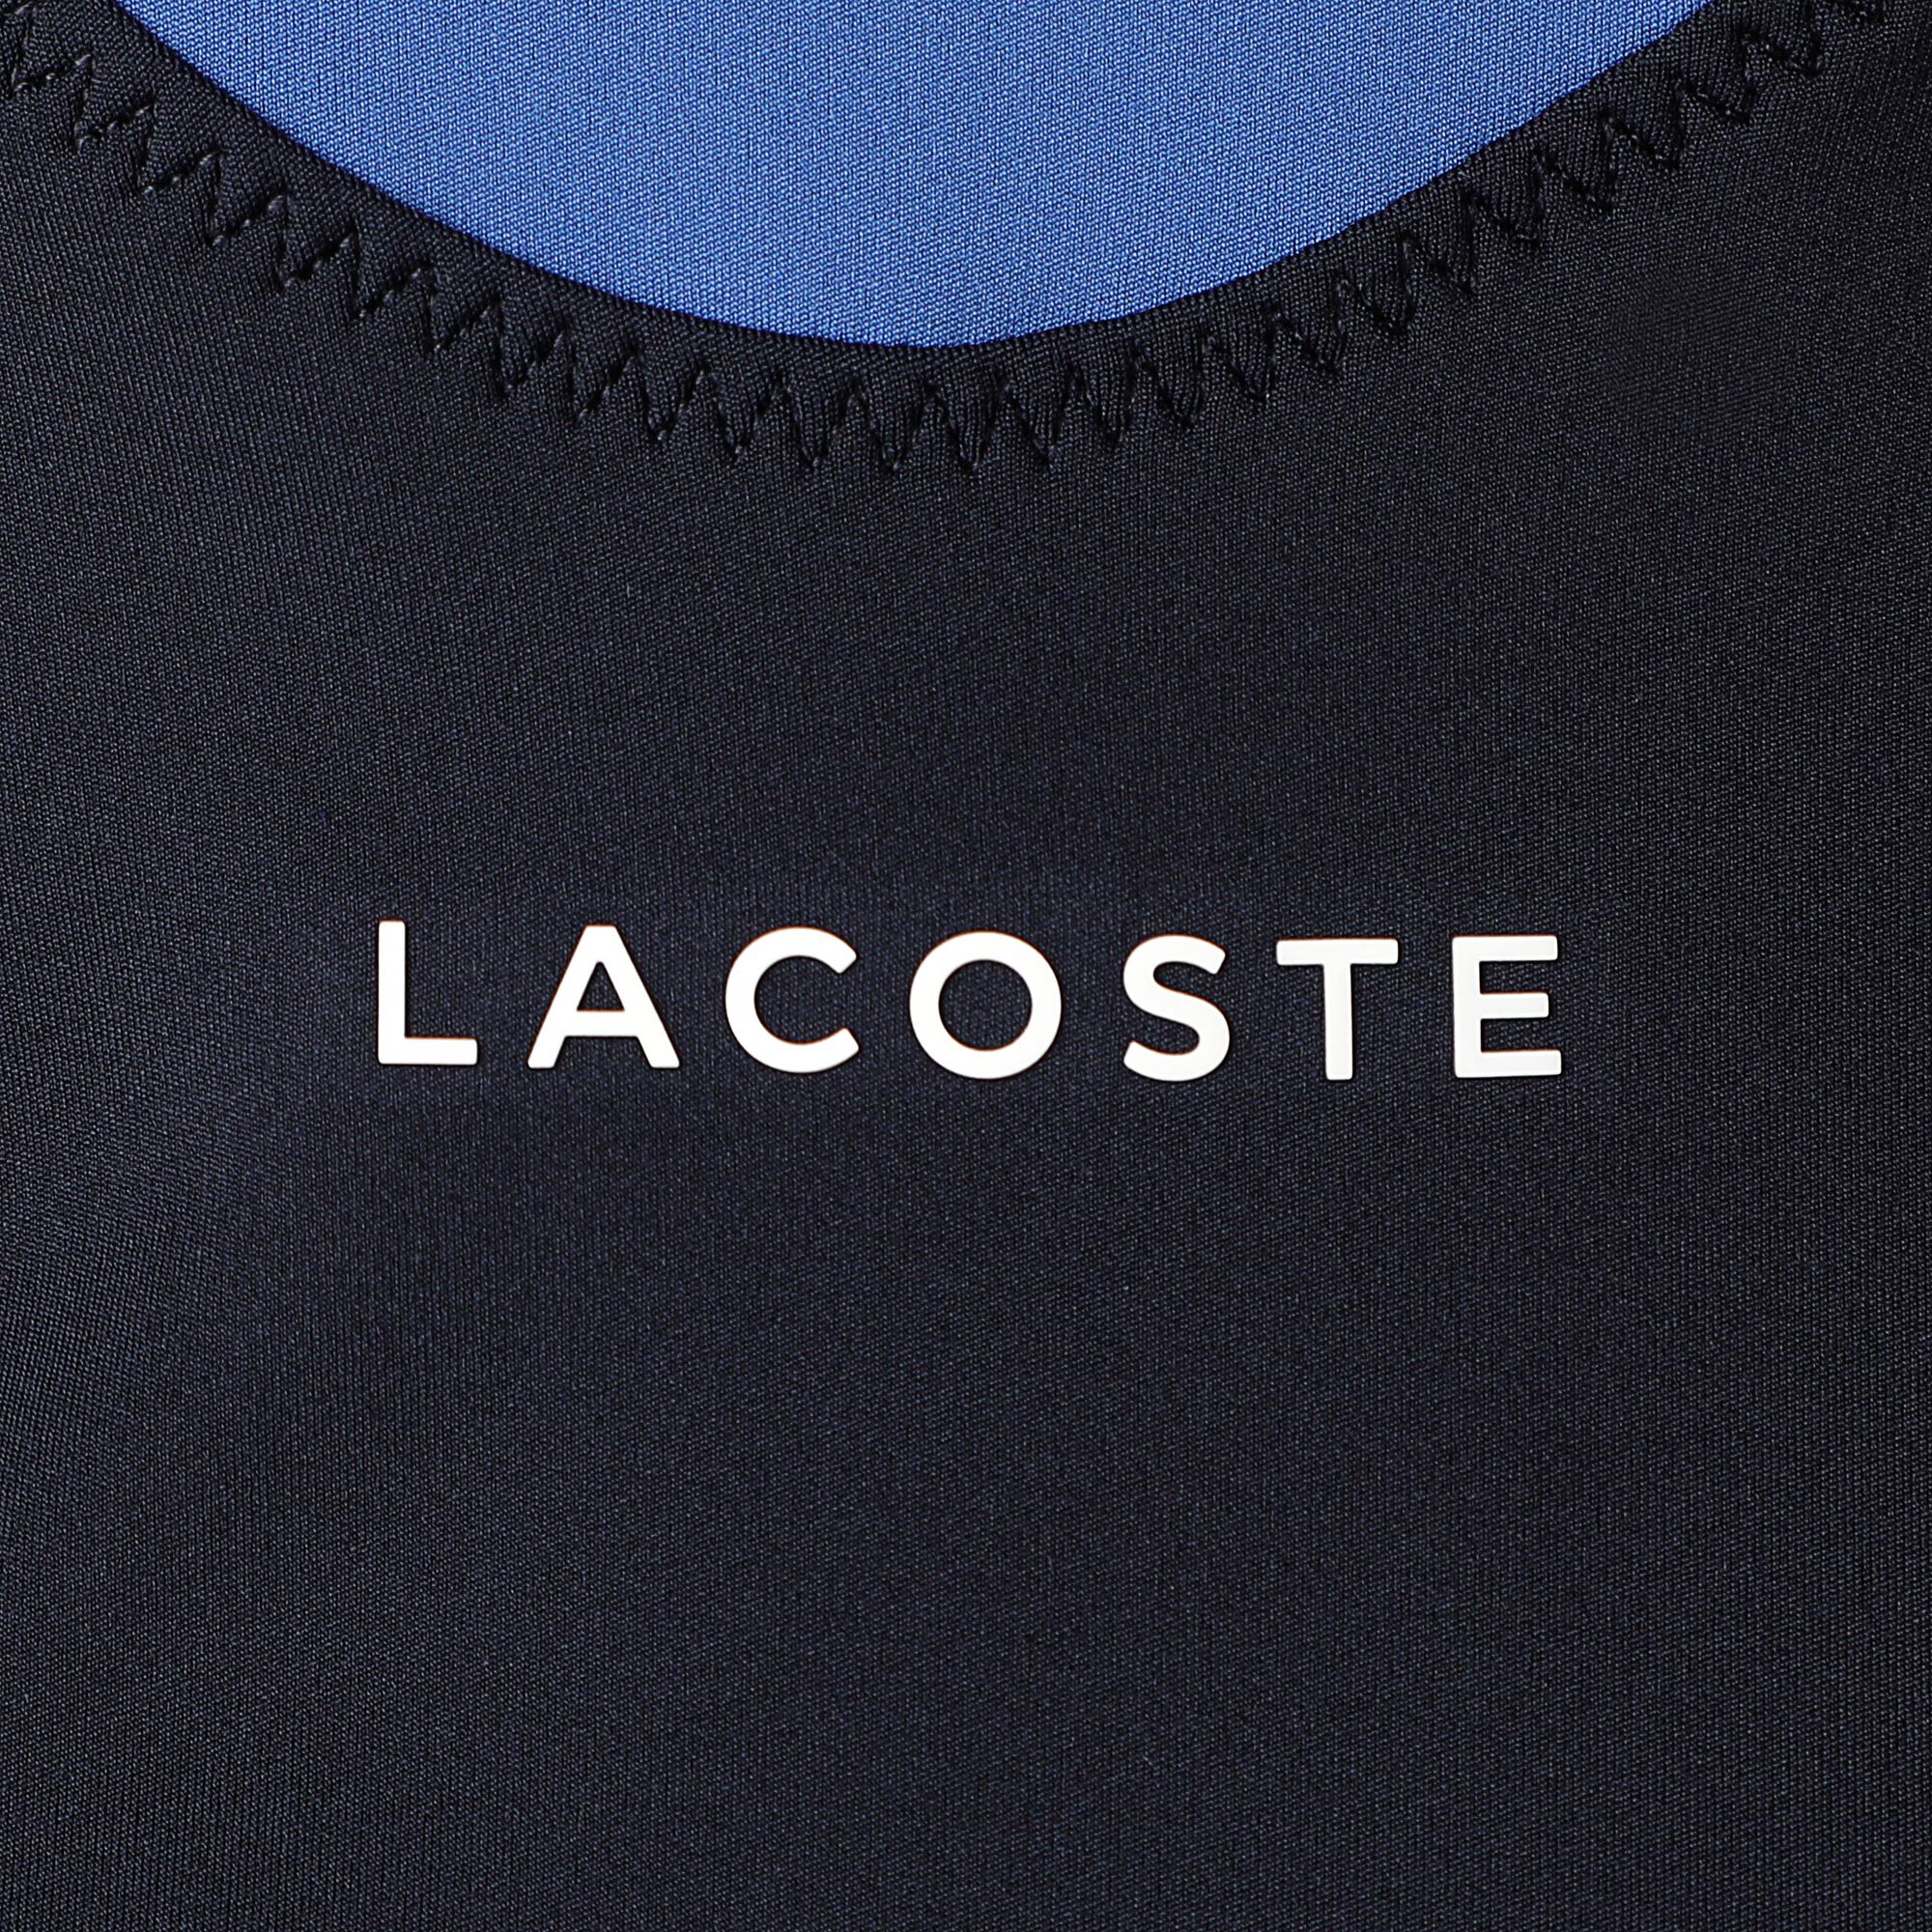 buy Lacoste Women - Dark Blue, White online | Tennis-Point